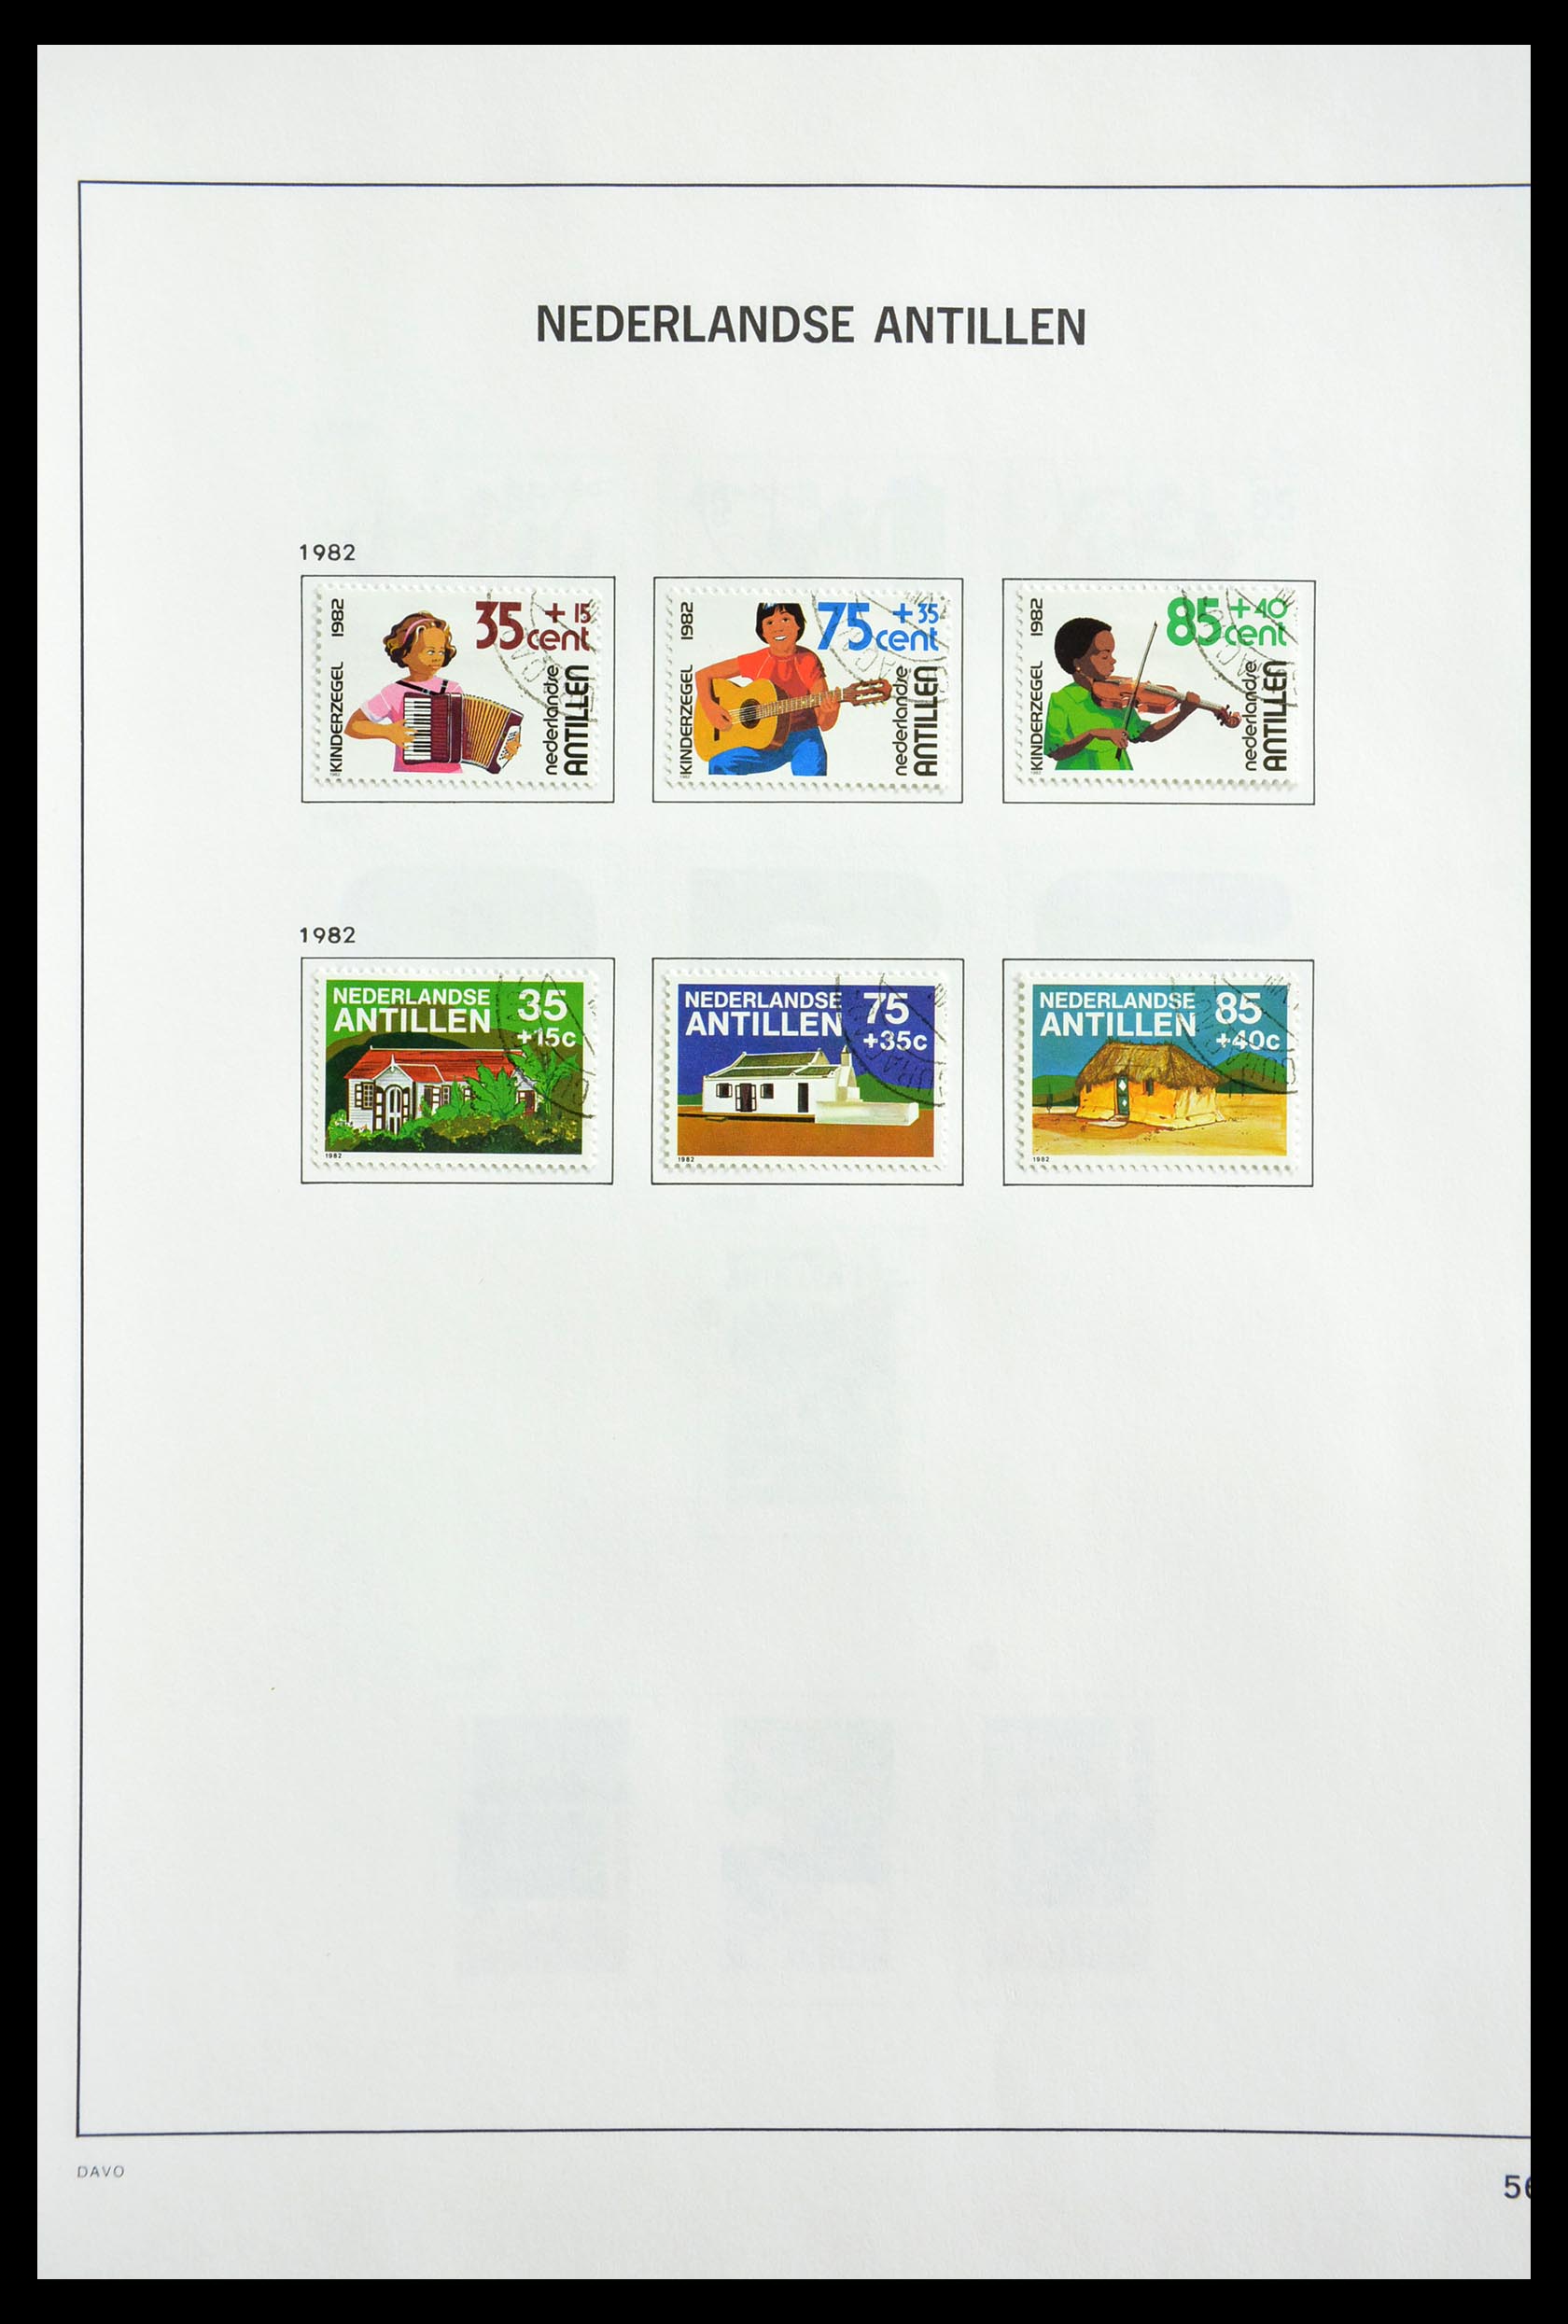 29189 048 - 29189 Netherlands Antilles 1949-1999.